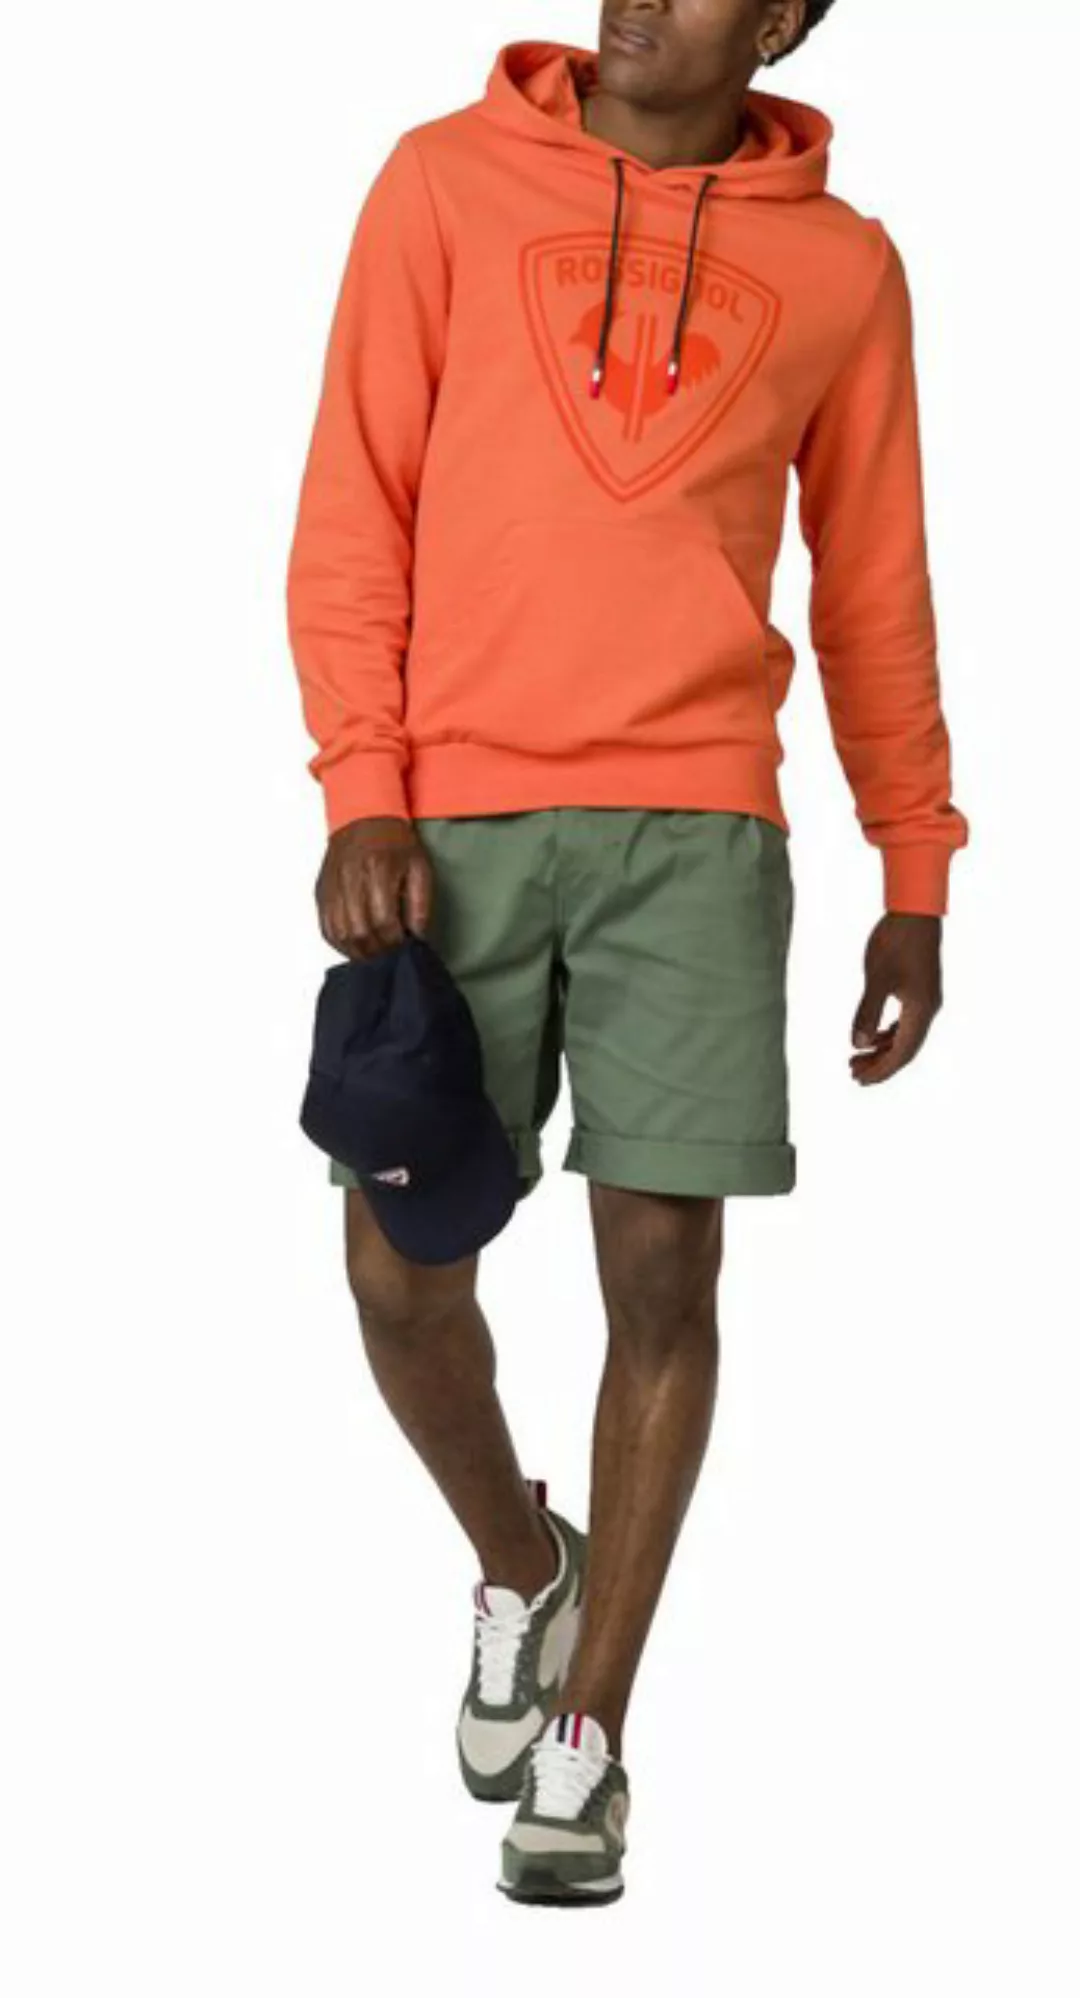 Rossignol Sweatshirt ROSSIGNOL Comfy Hoodie Sweatshirt Pullover Kapuzenpull günstig online kaufen